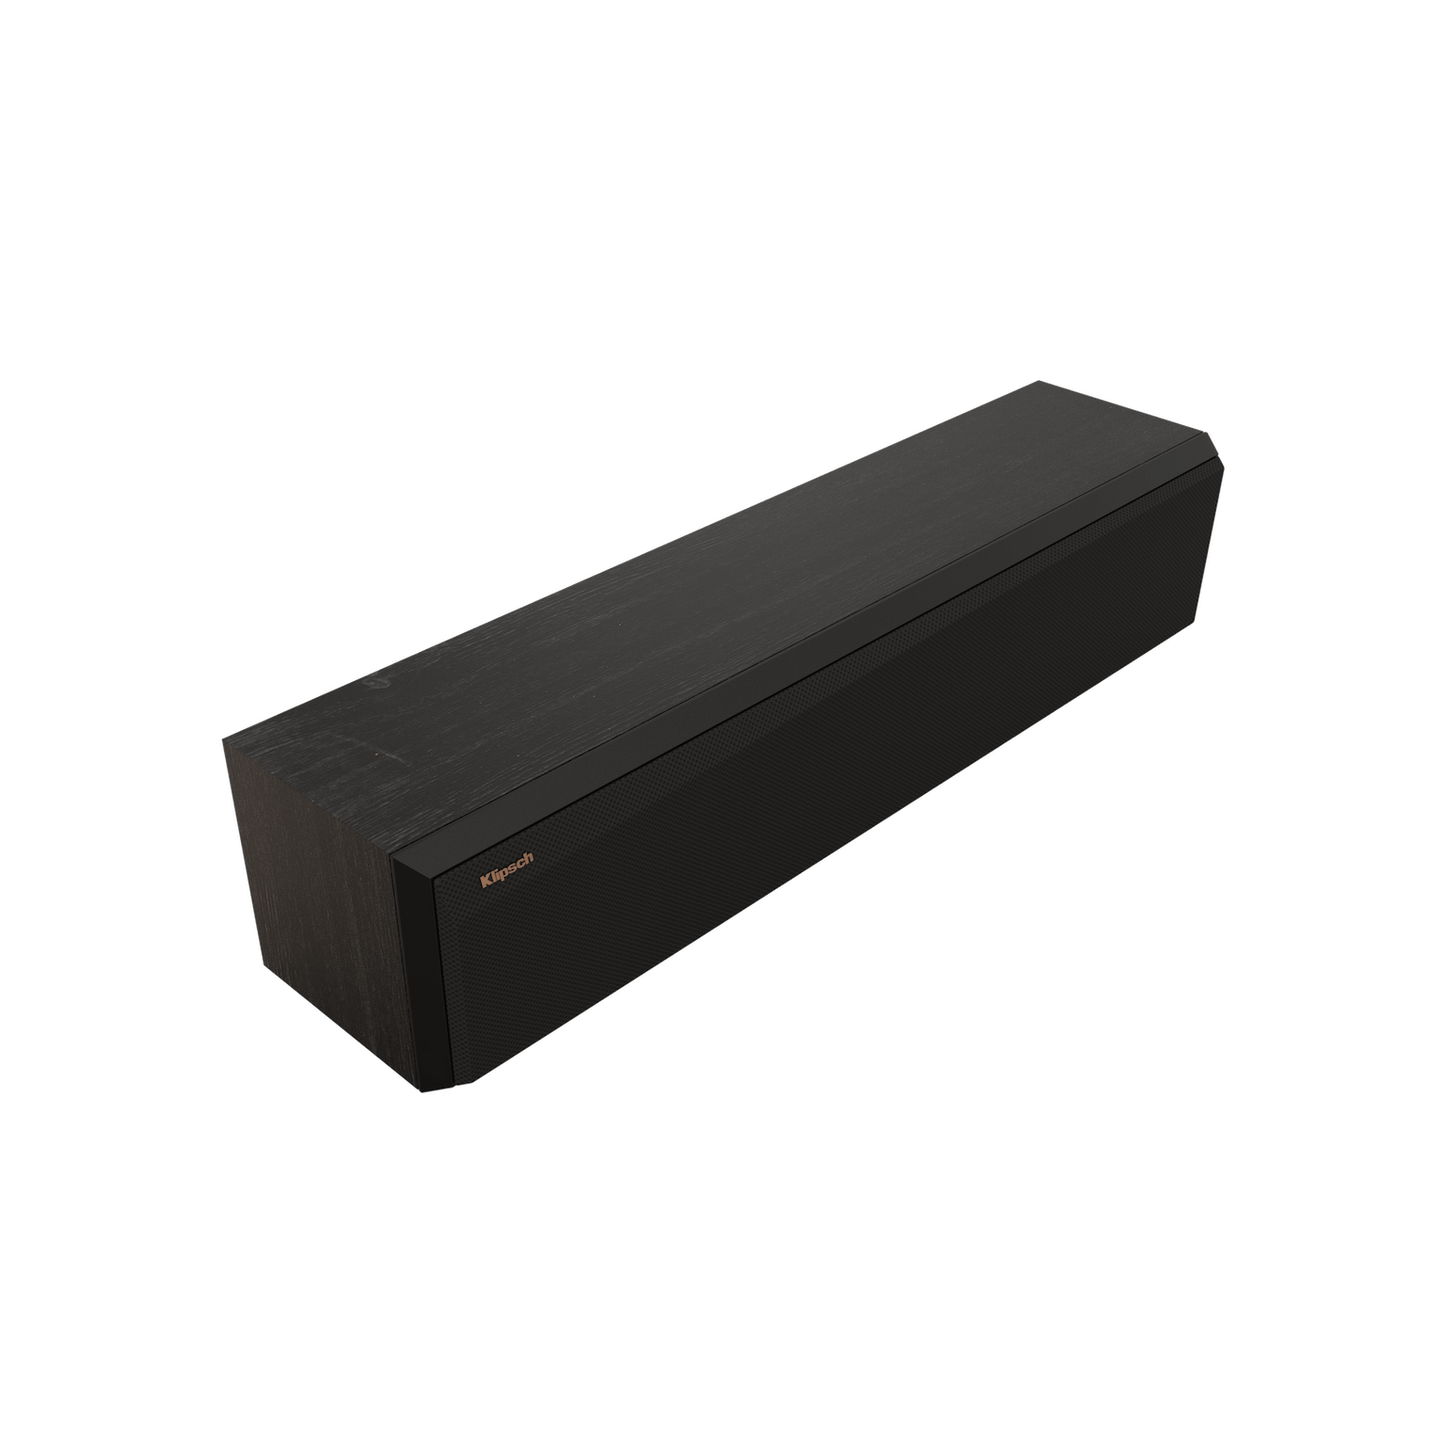 Klipsch RP-404C II Center Channel Speaker - each - Black